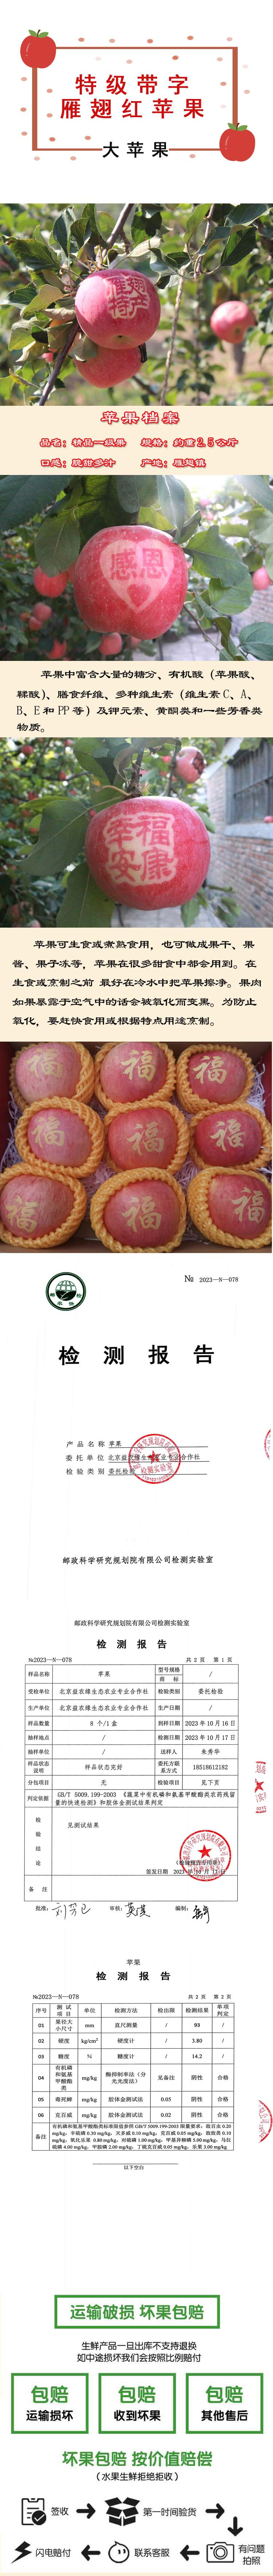  邮政农品 【北京馆】门头沟雁翅红苹果精品特级带字2.5KG